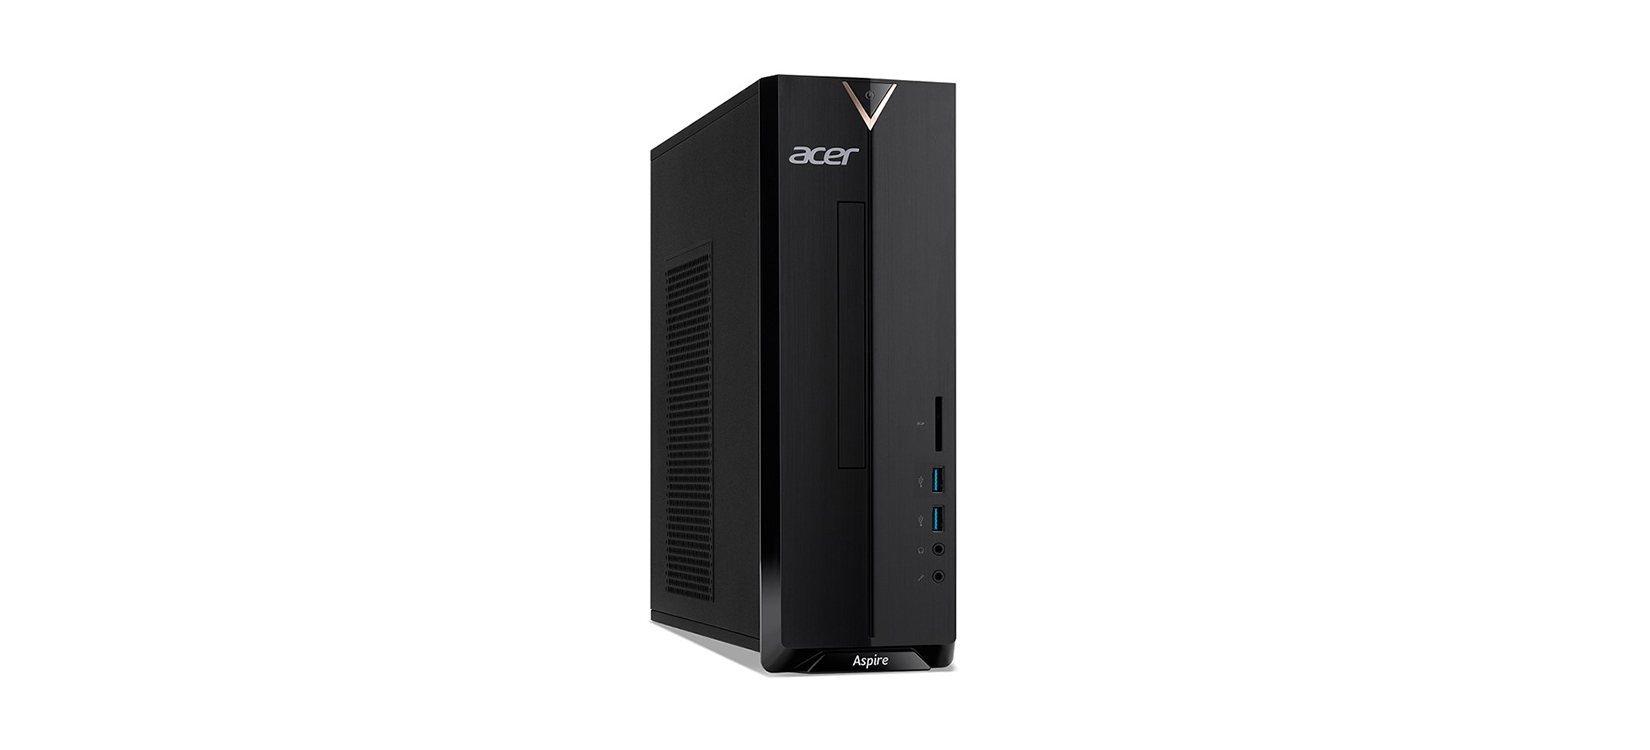 Máy bộ Acer Aspire XC-830 DT.B9XSV.001 (Đen) cũng được trang bị đầy đủ các cổng giao tiếp